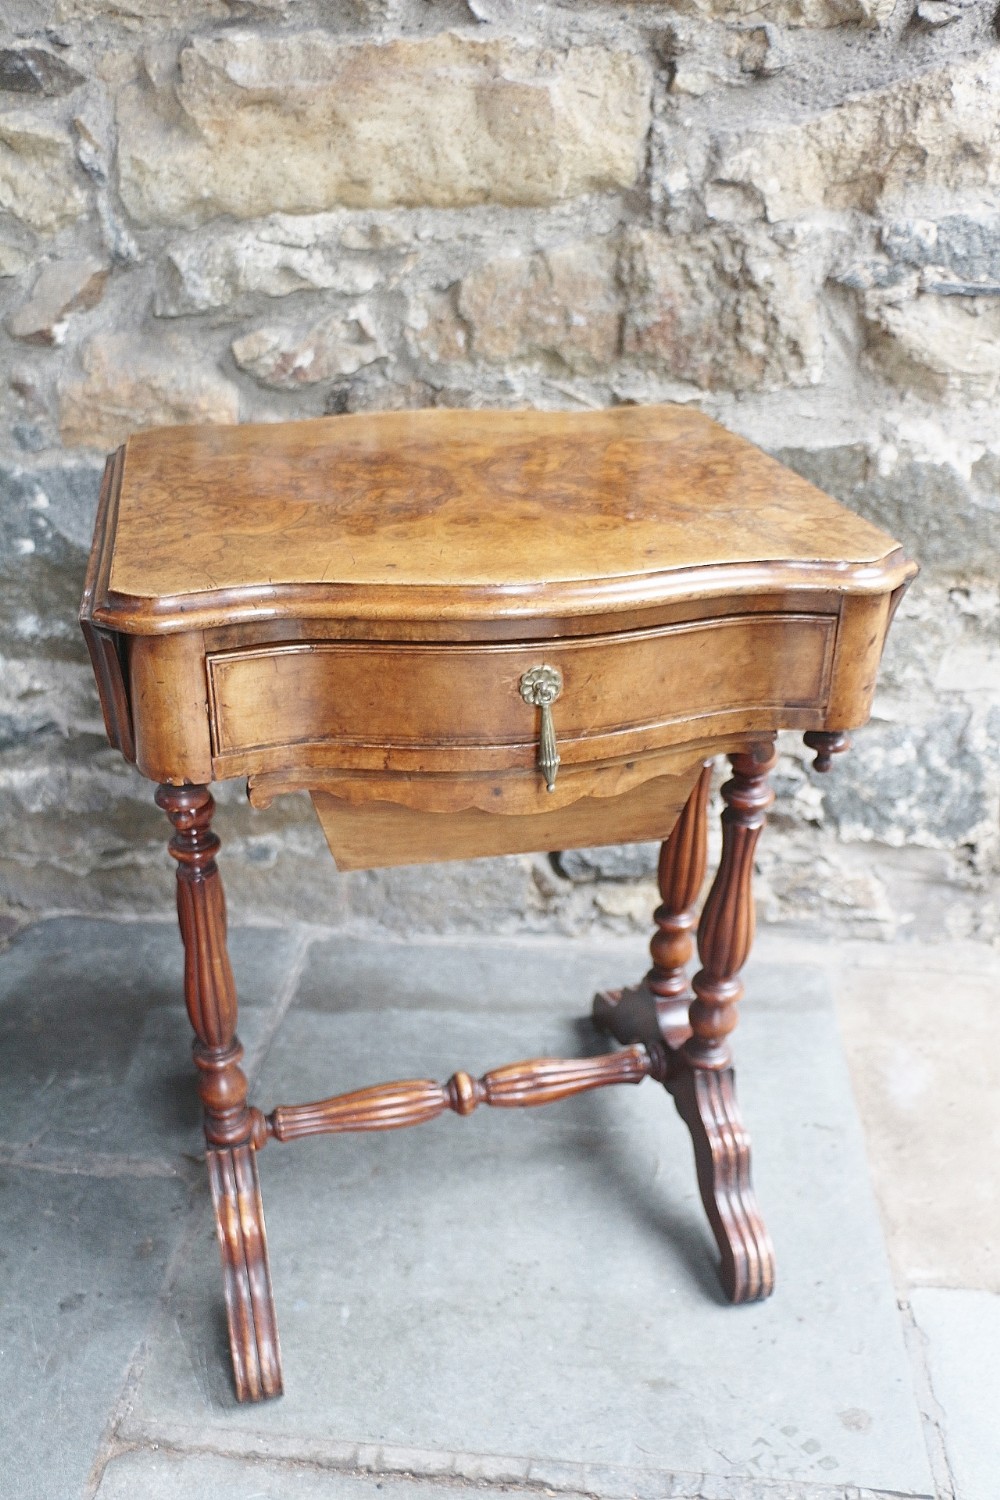 19th century burr walnut drop leaf sewing table